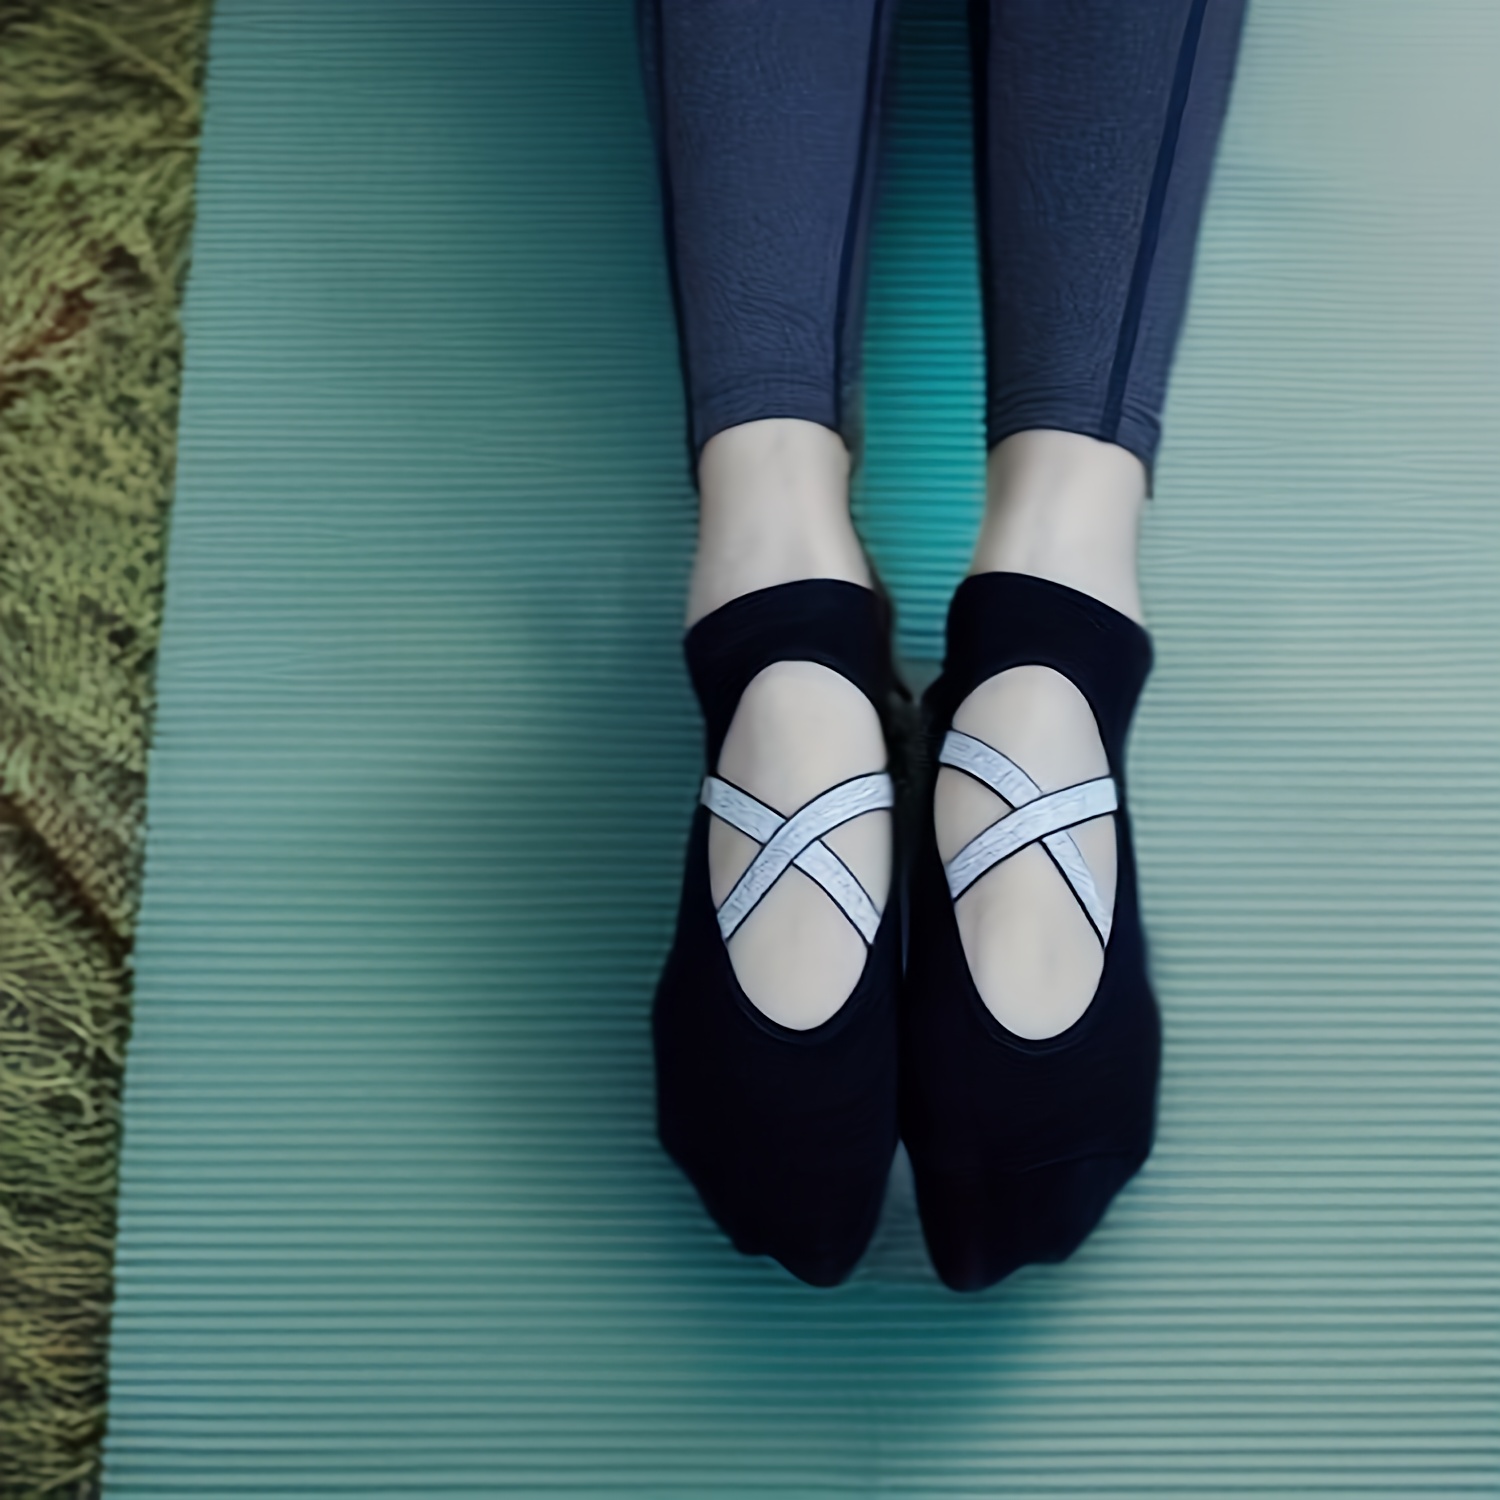 Yoga Socks - Non-Slip Grip perfect for Yoga, Pilates, Ballet & Dance -  Unisex